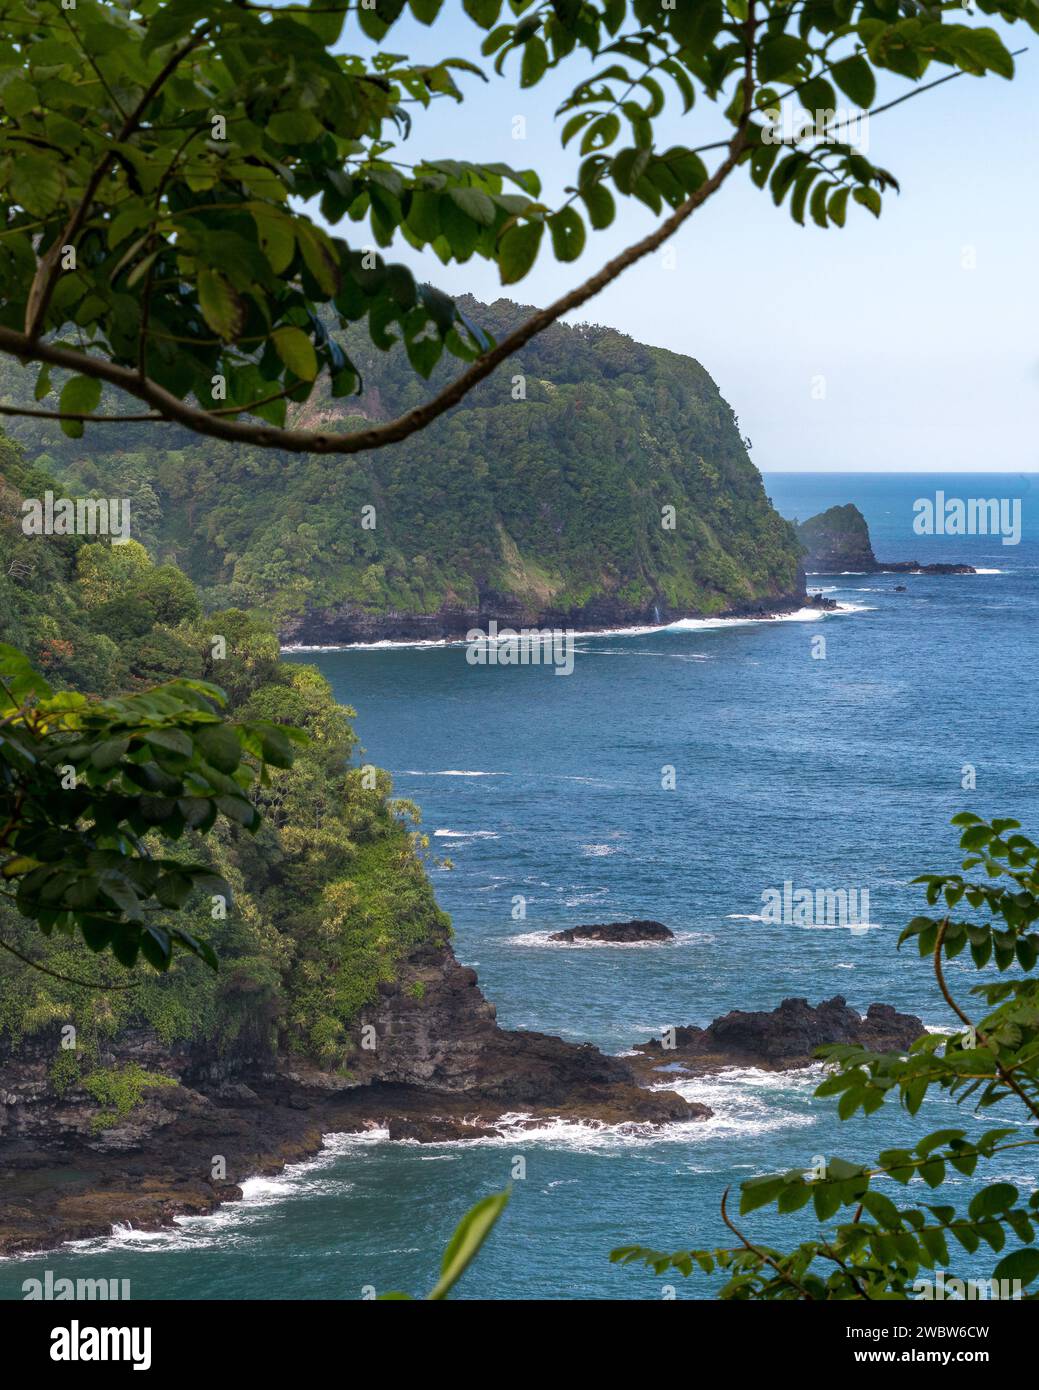 Mit Blick auf den ruhigen Pazifik, die üppigen Küstenklippen von Maui offenbaren die atemberaubende Schönheit entlang der Road to Hana. Stockfoto